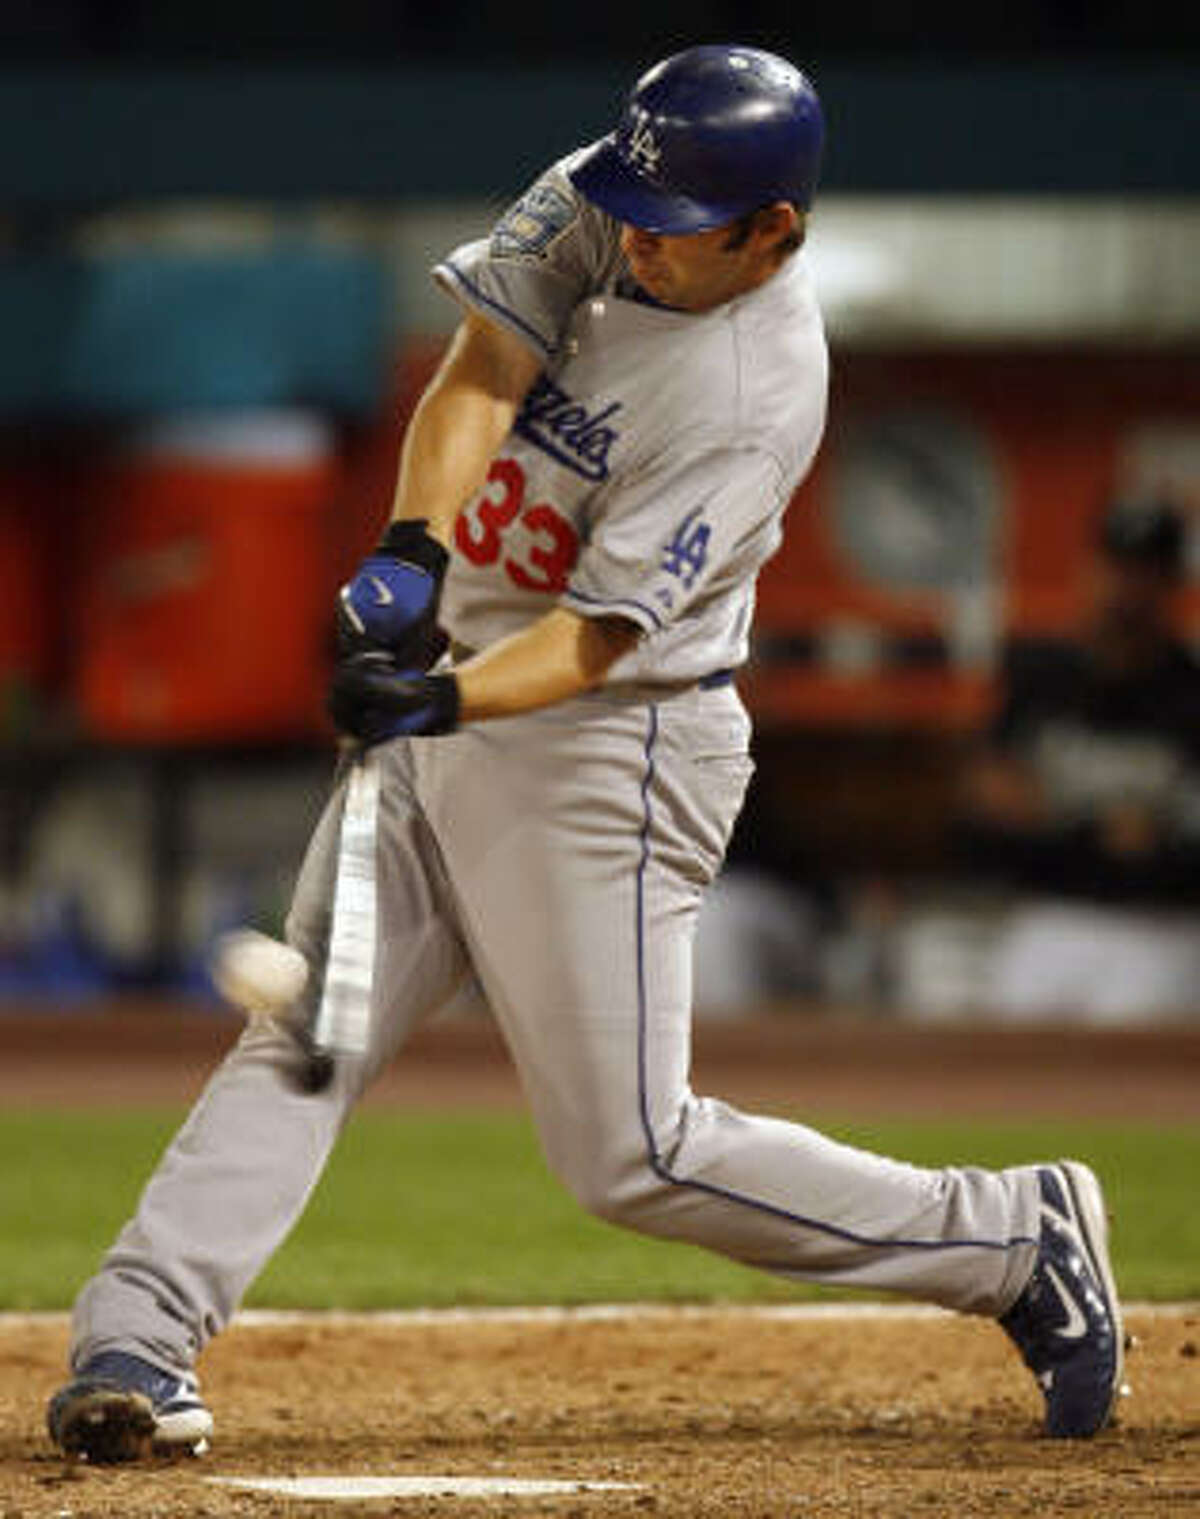 Blake DeWitt, third base, Dodgers: